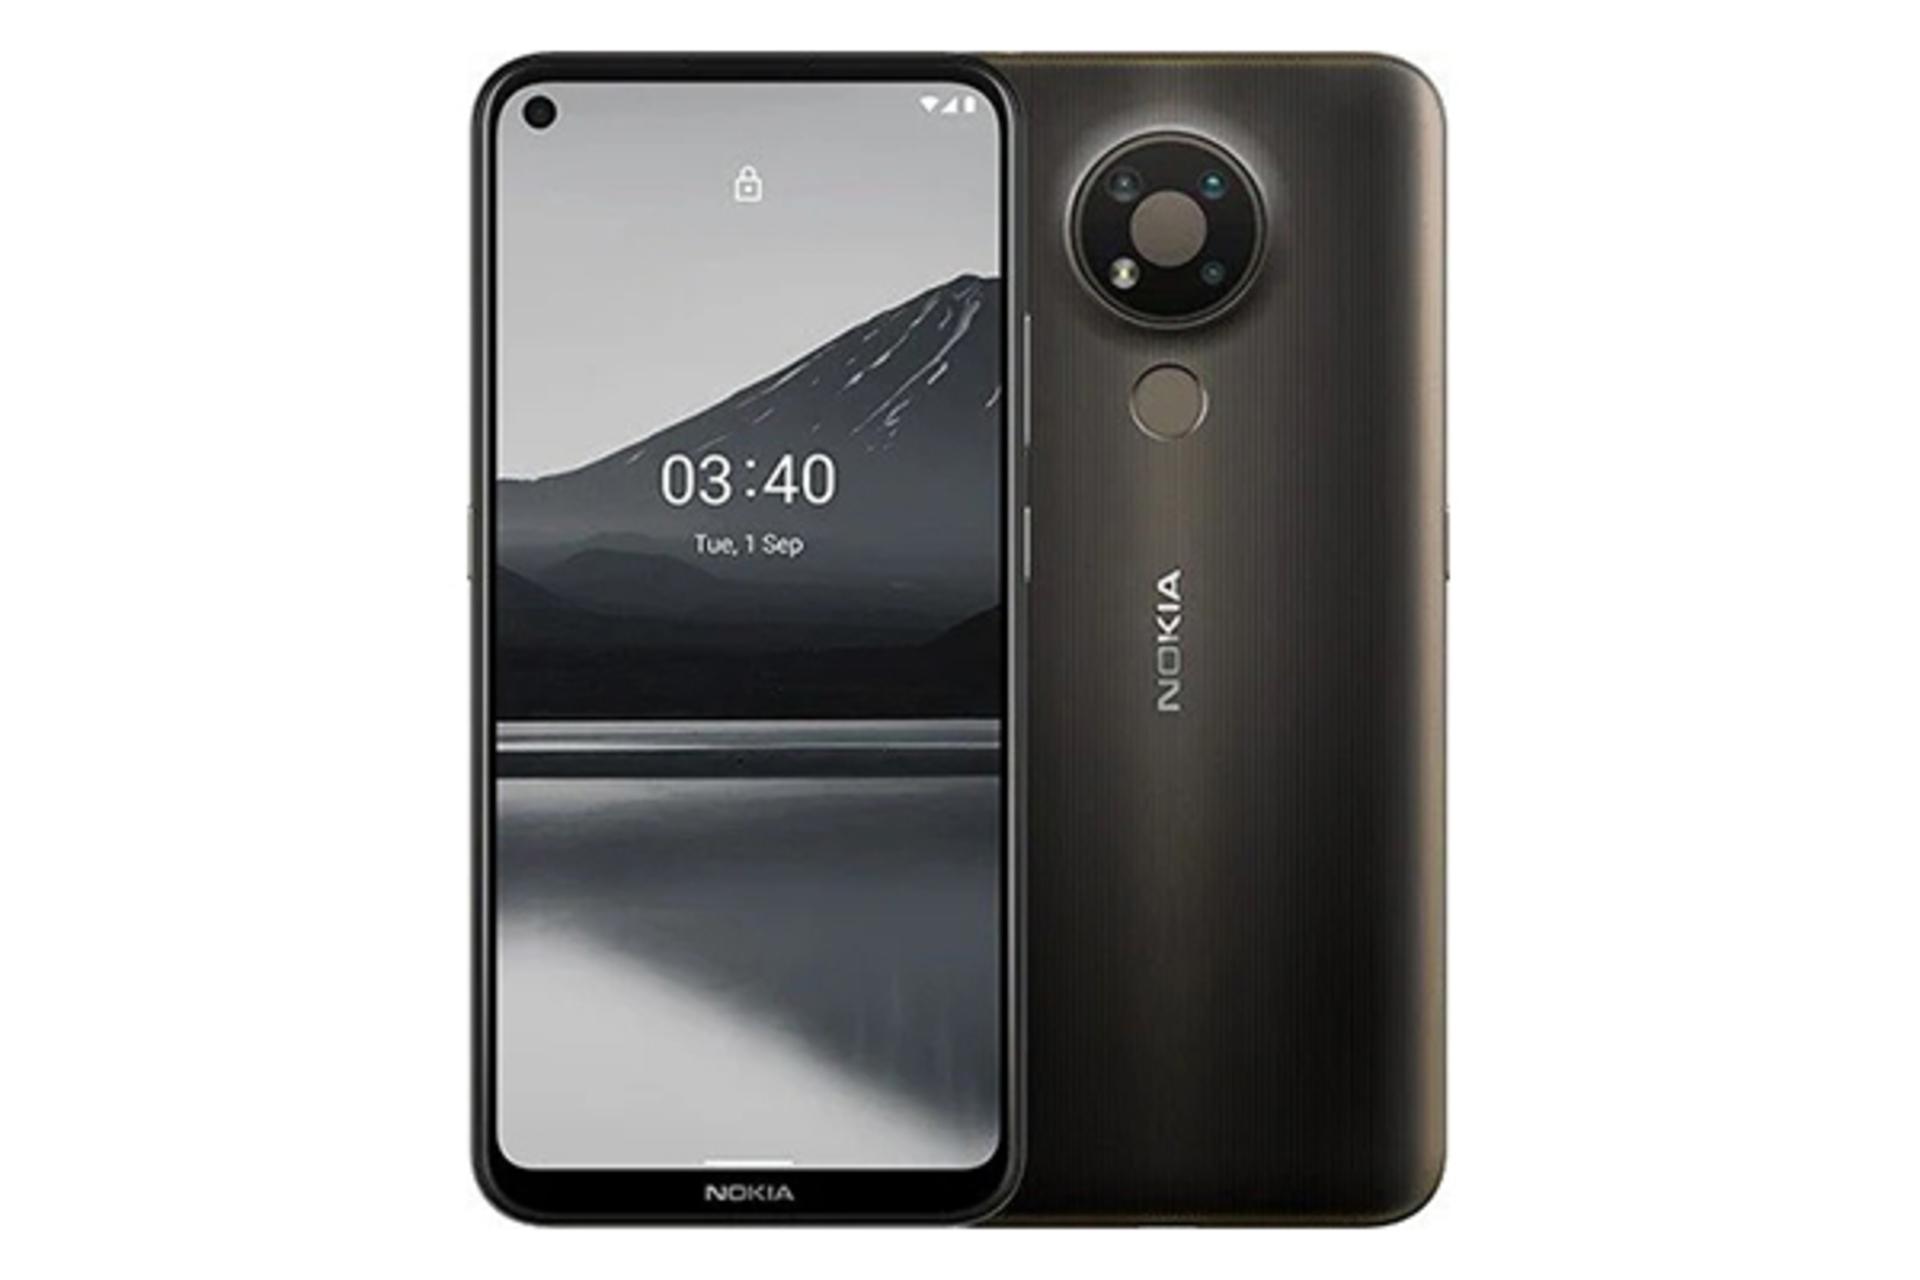 گوشی Nokia 3.4 رنگ مشکی نمای جلو و پشت و دوربین ها / نوکیا 3.4